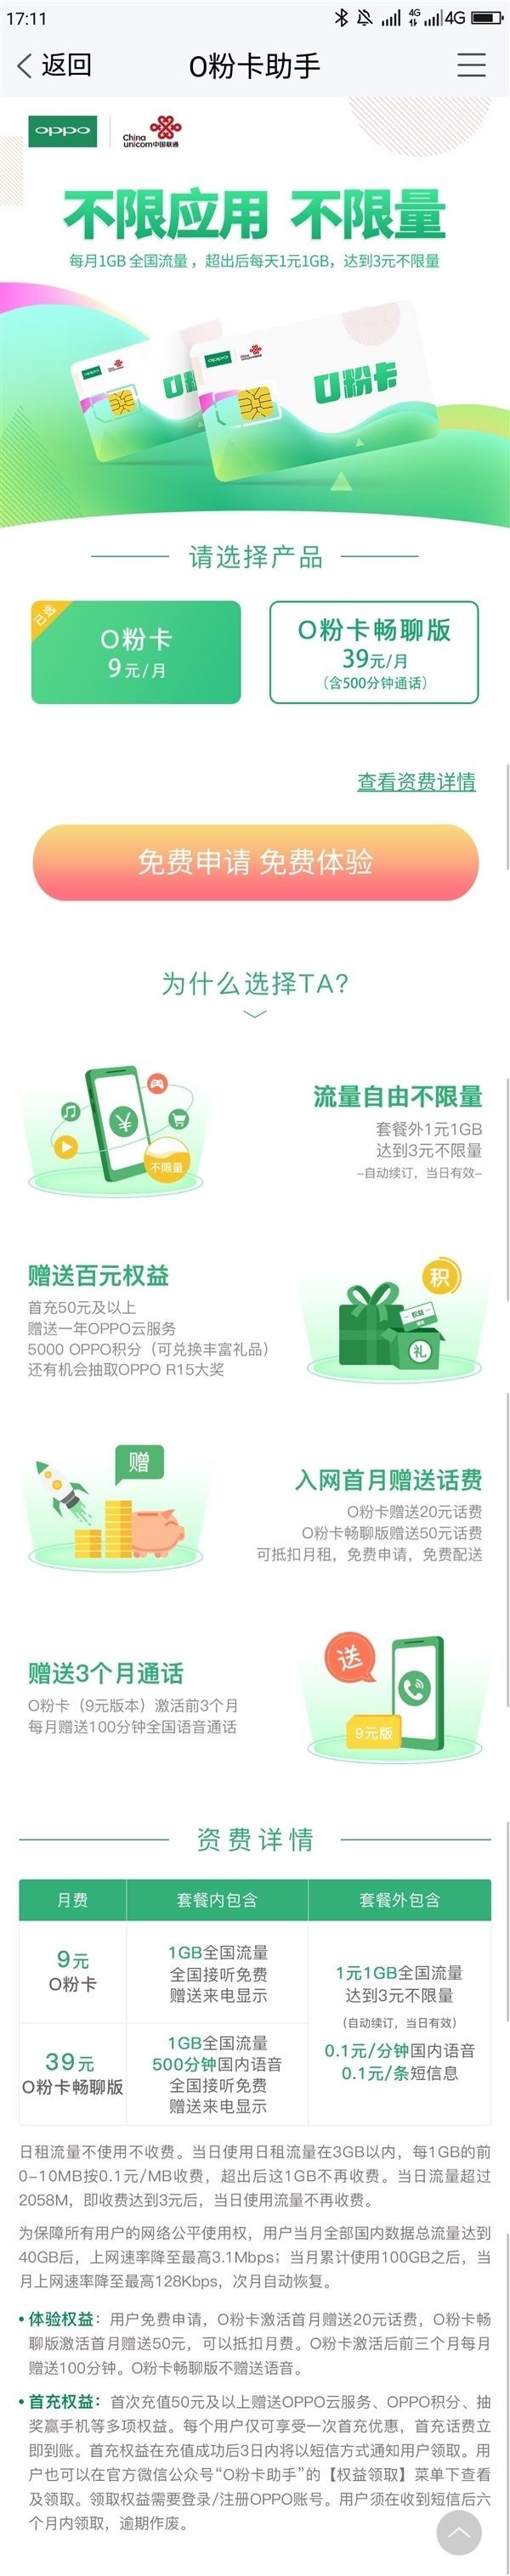 月租9元起 OPPO与中国联通推出O粉卡